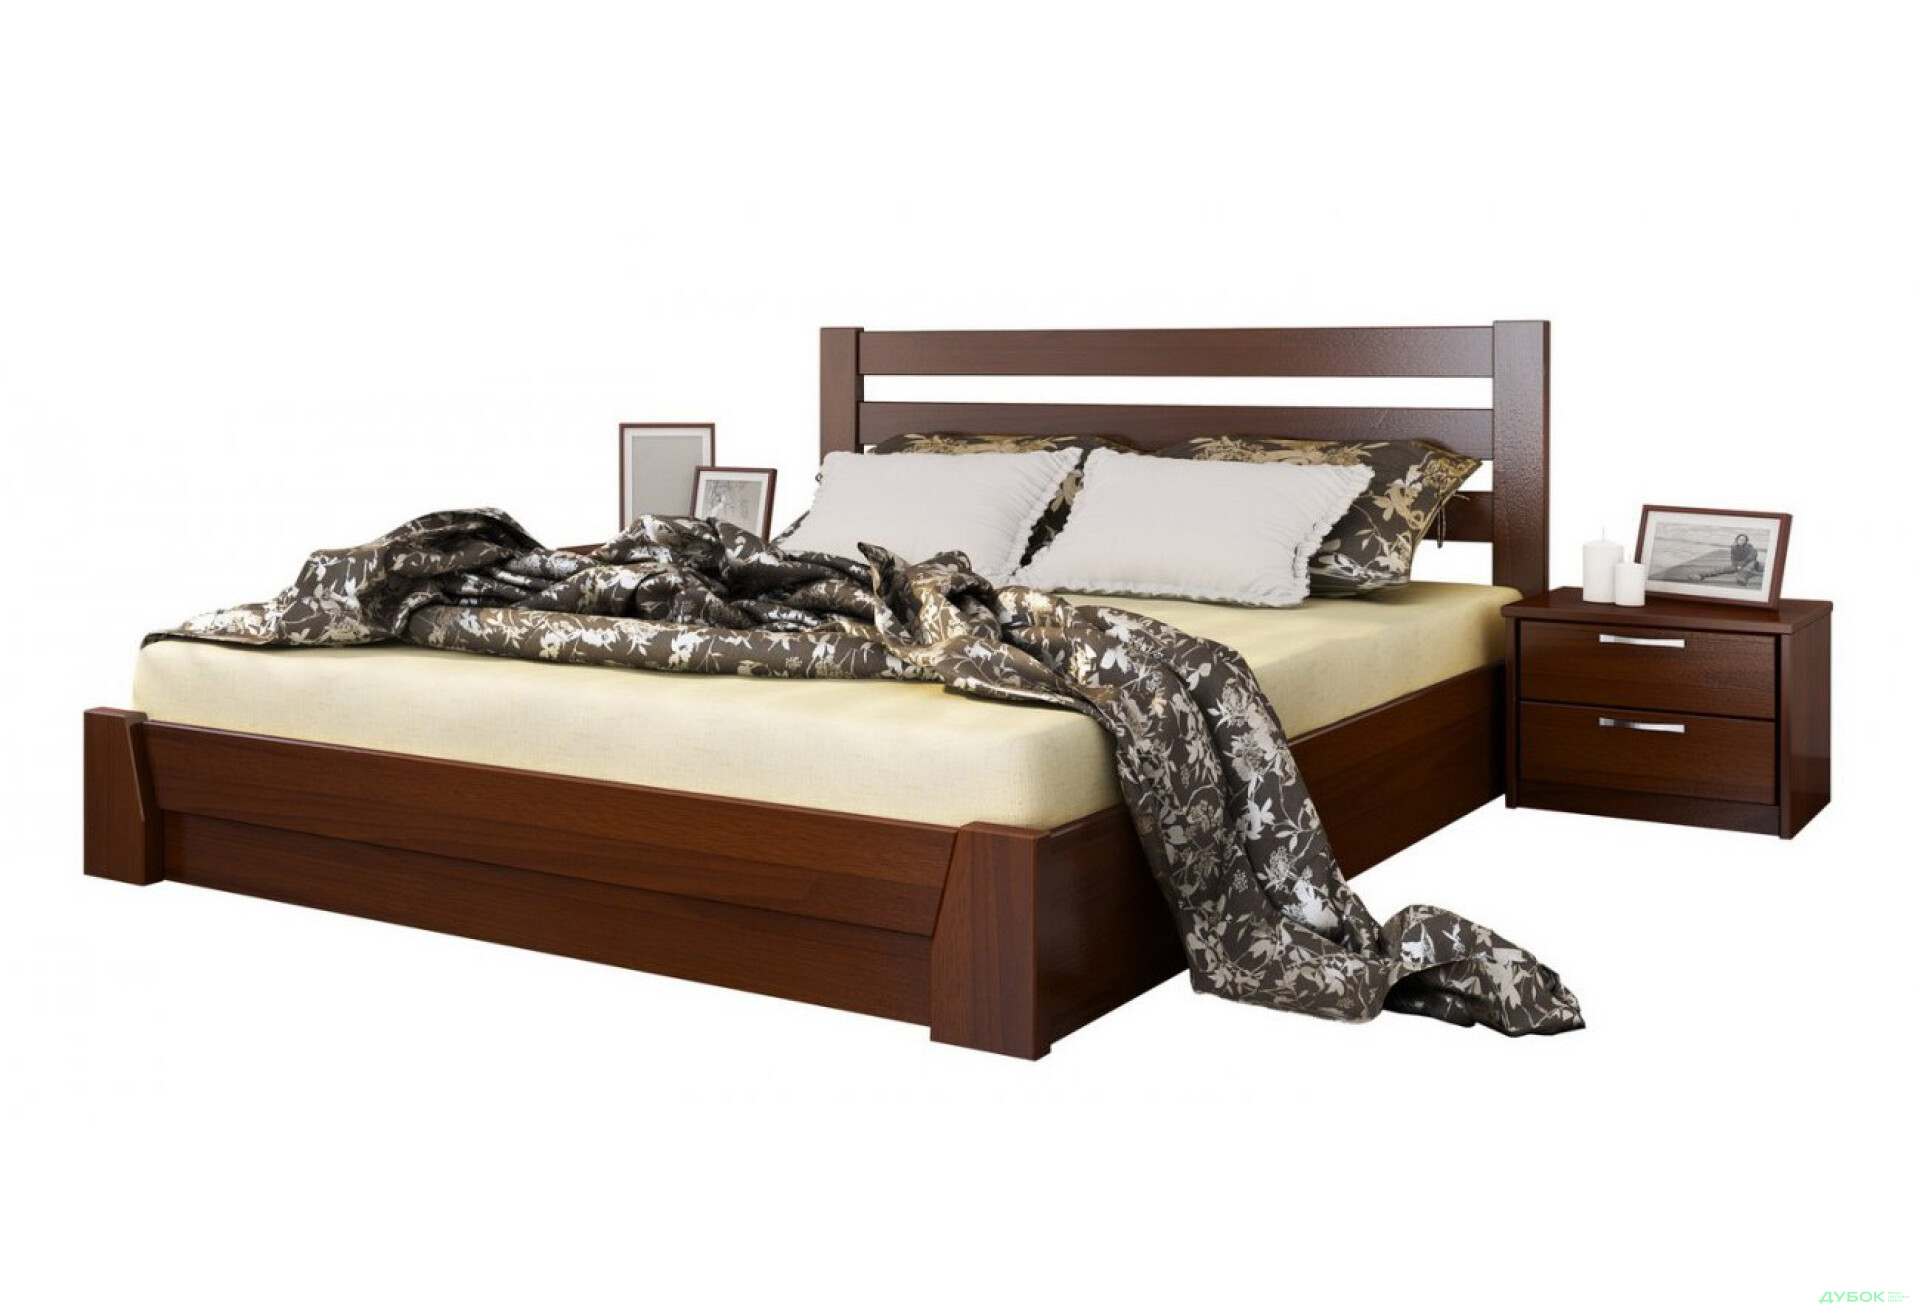 Фото 4 - Серия Тесса кровать Селена 180х200 подъемная (массив) Эстелла